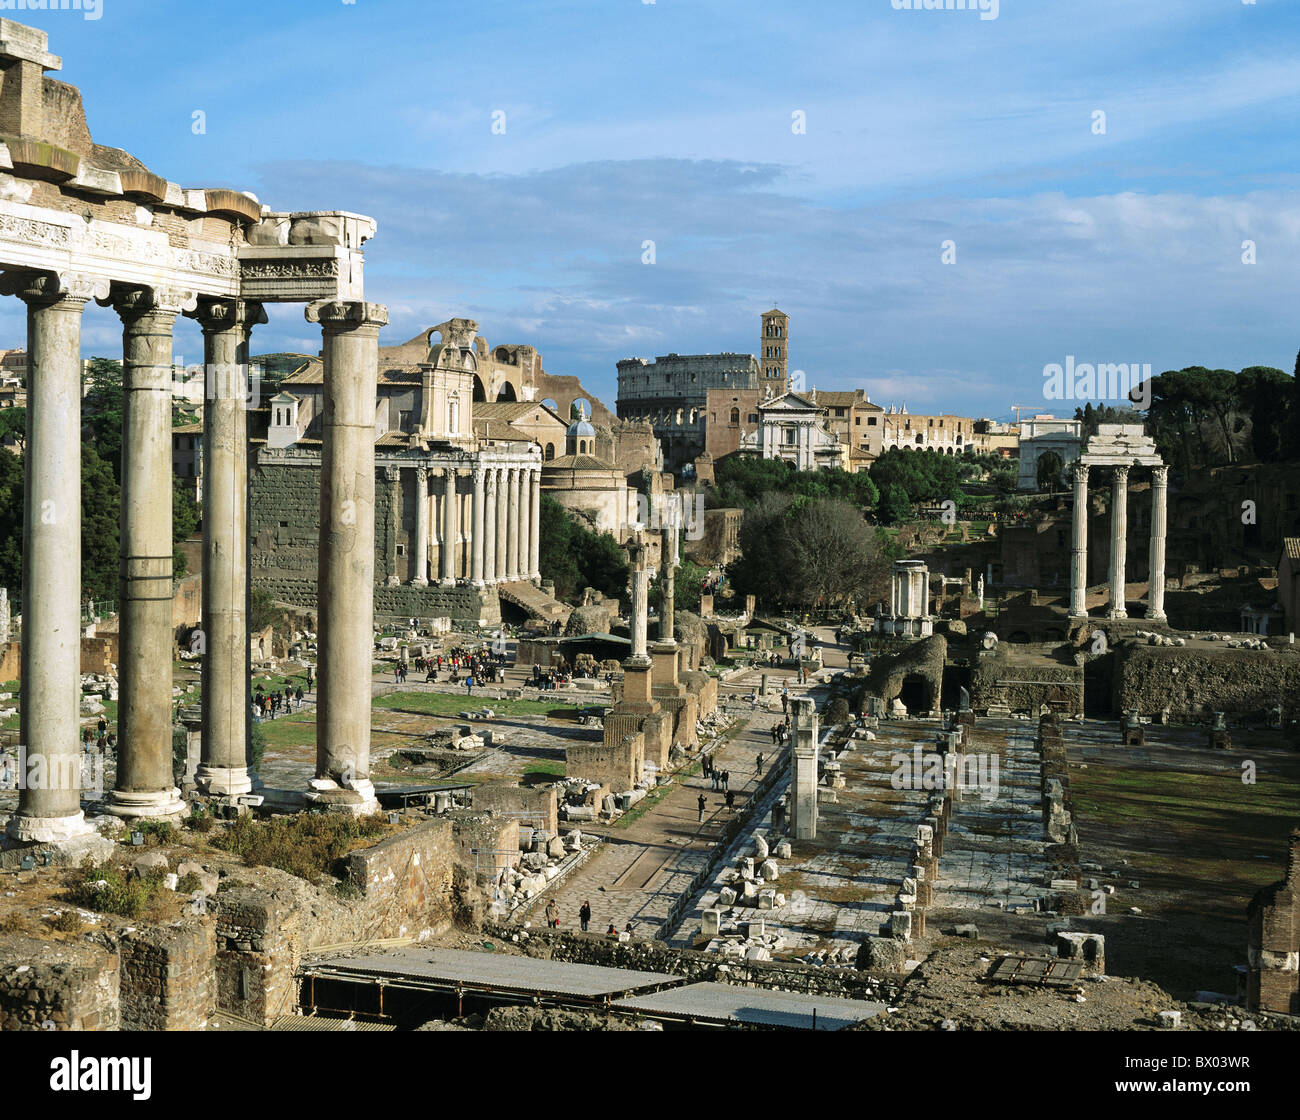 Un monde ancien antiquité historique forum Italie Rome Europe Roman Roman ruins Banque D'Images